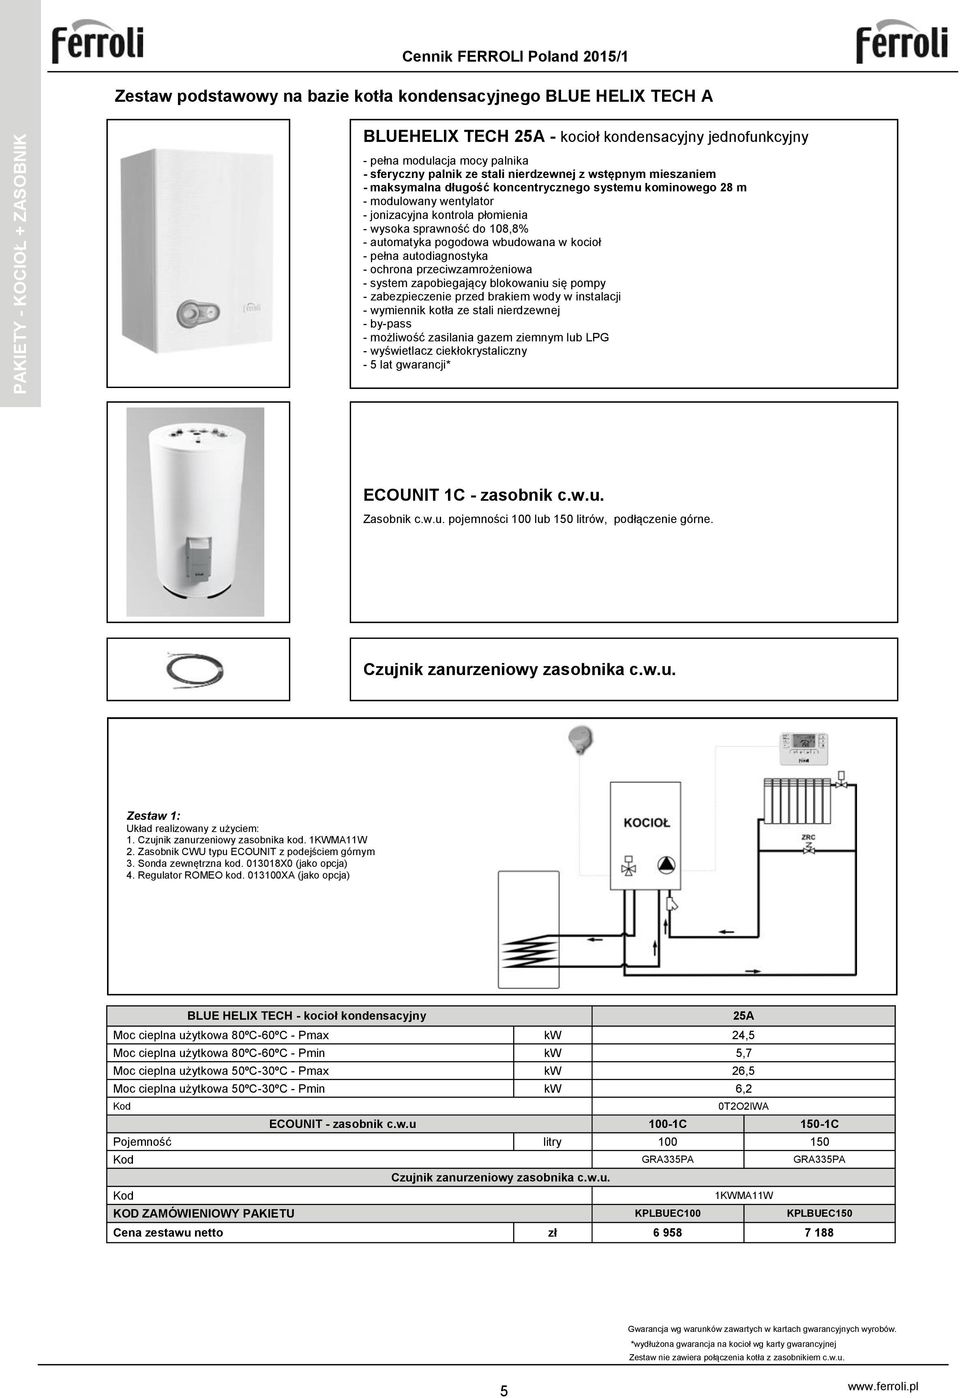 automatyka pogodowa wbudowana w kocioł - pełna autodiagnostyka - ochrona przeciwzamrożeniowa - system zapobiegający blokowaniu się pompy - zabezpieczenie przed brakiem wody w instalacji - wymiennik